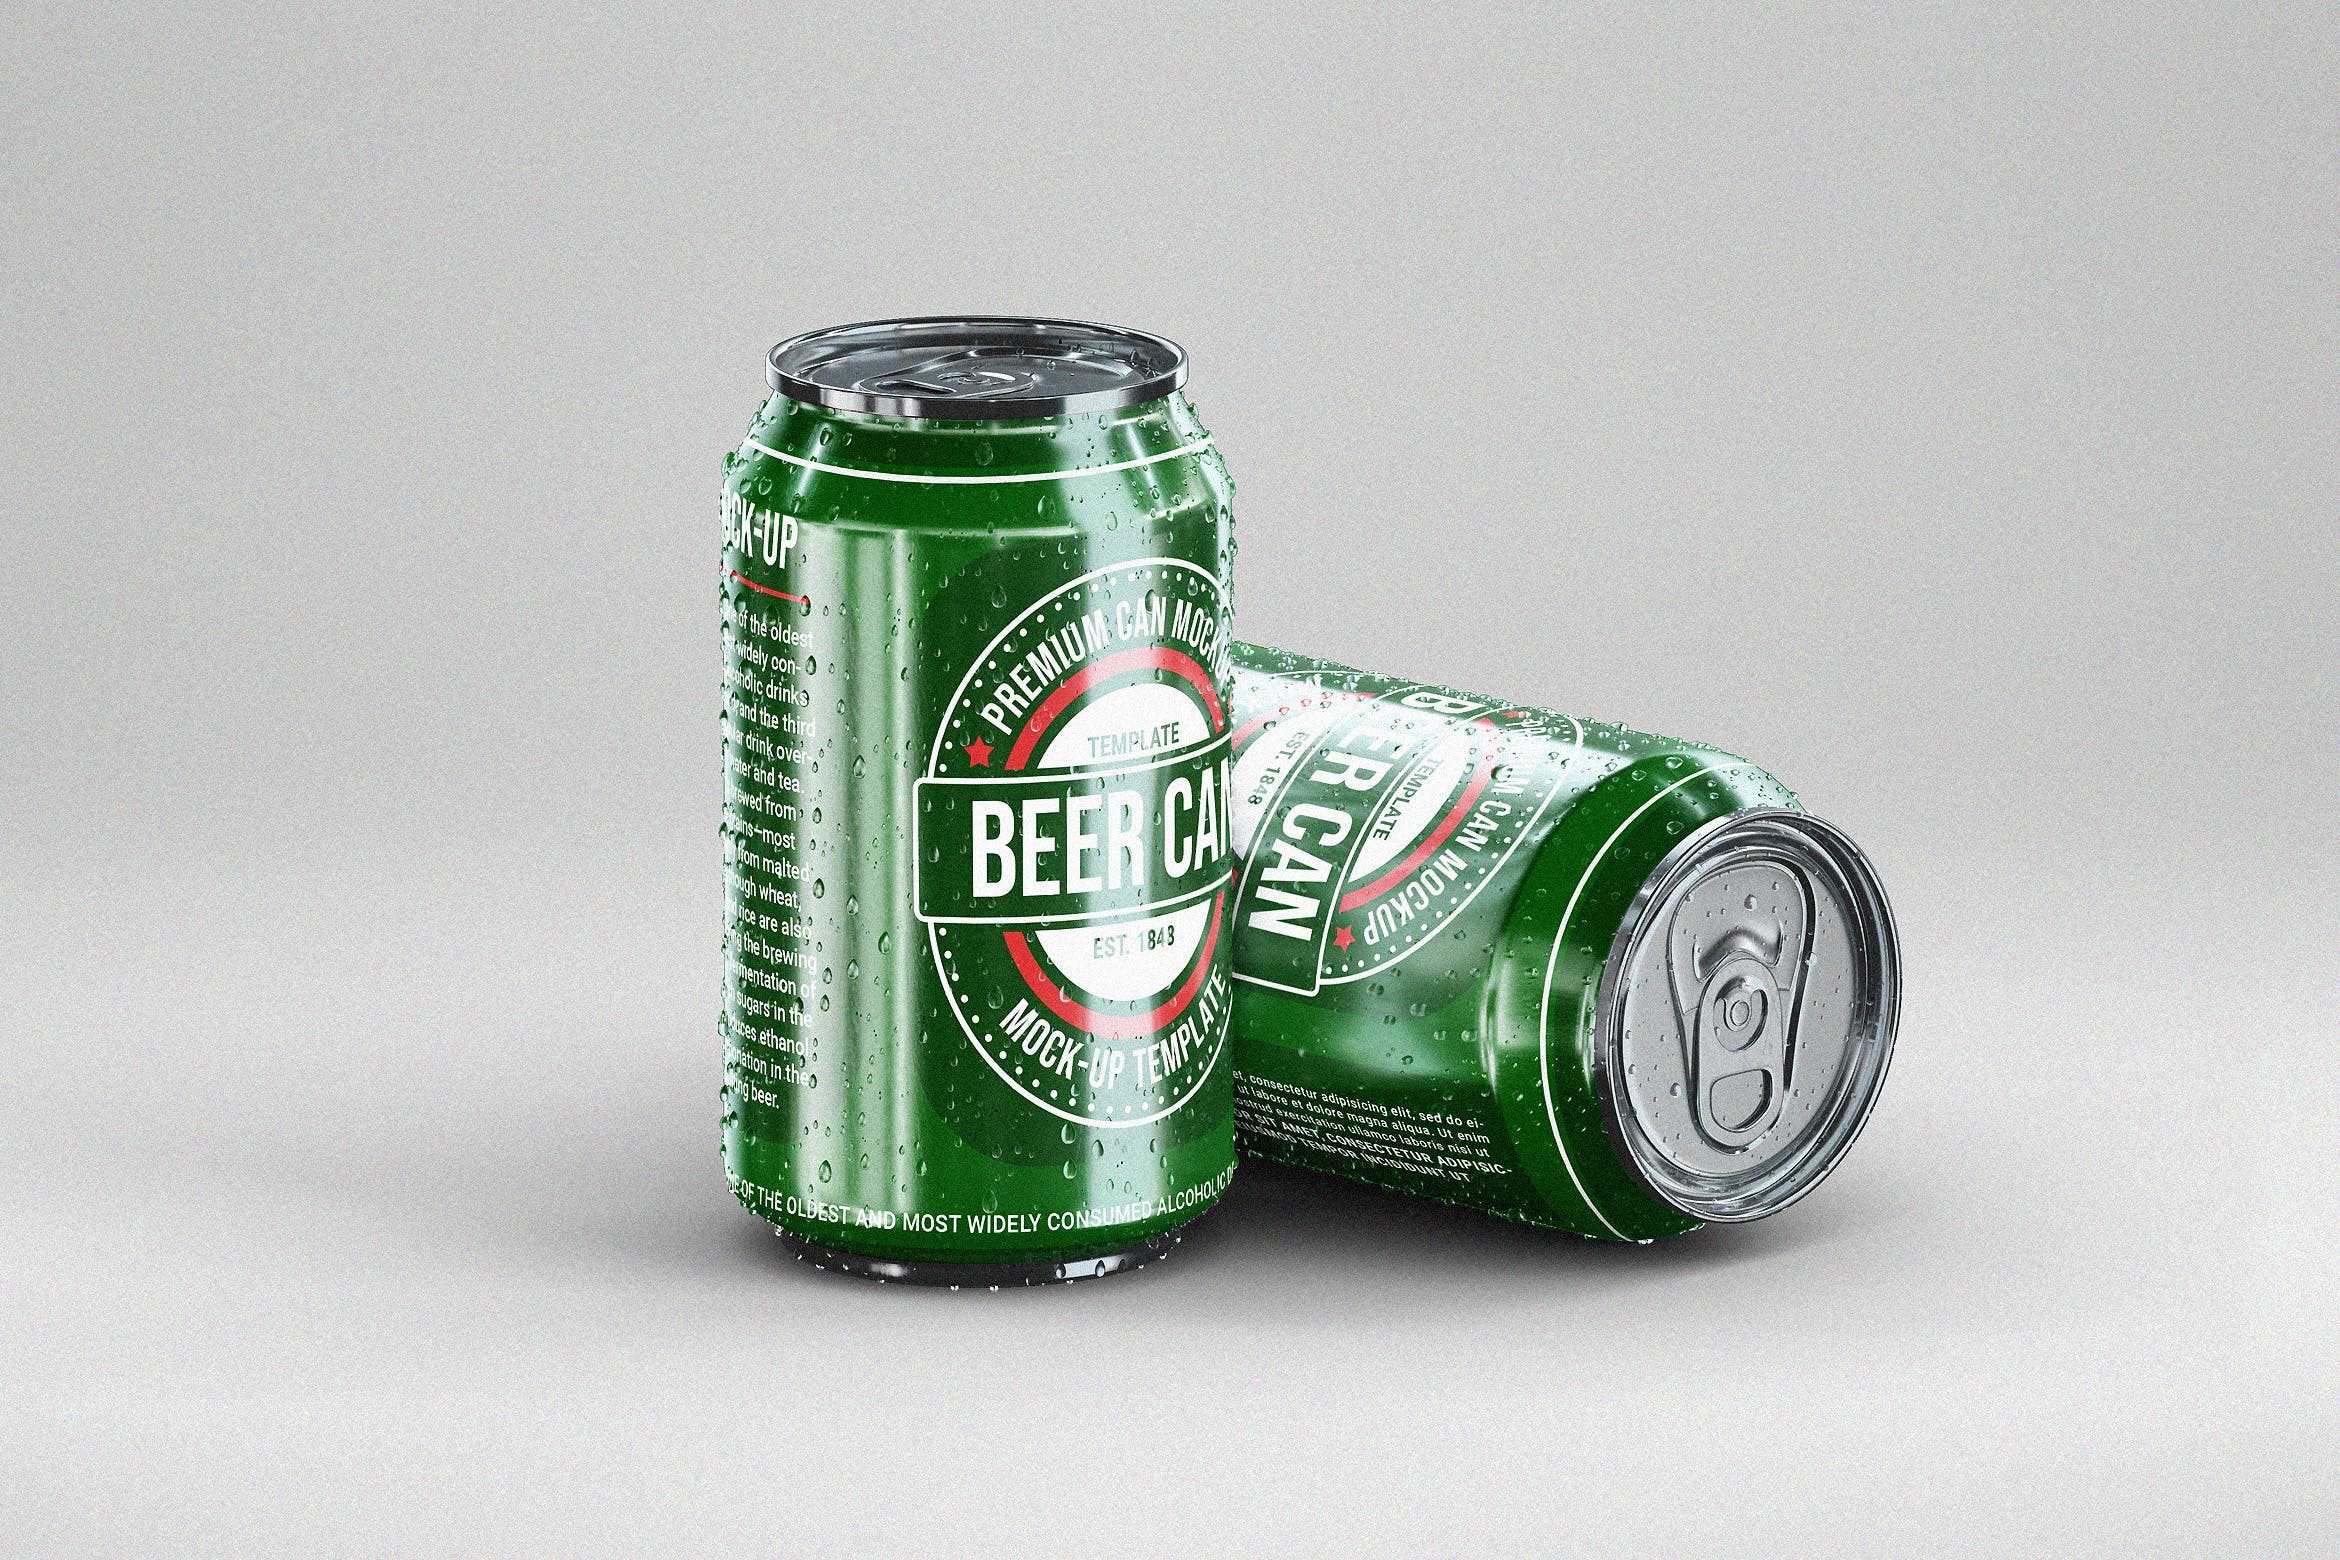 啤酒易拉罐包装外观设计样机 Small Beer Can Mock-Up Template插图